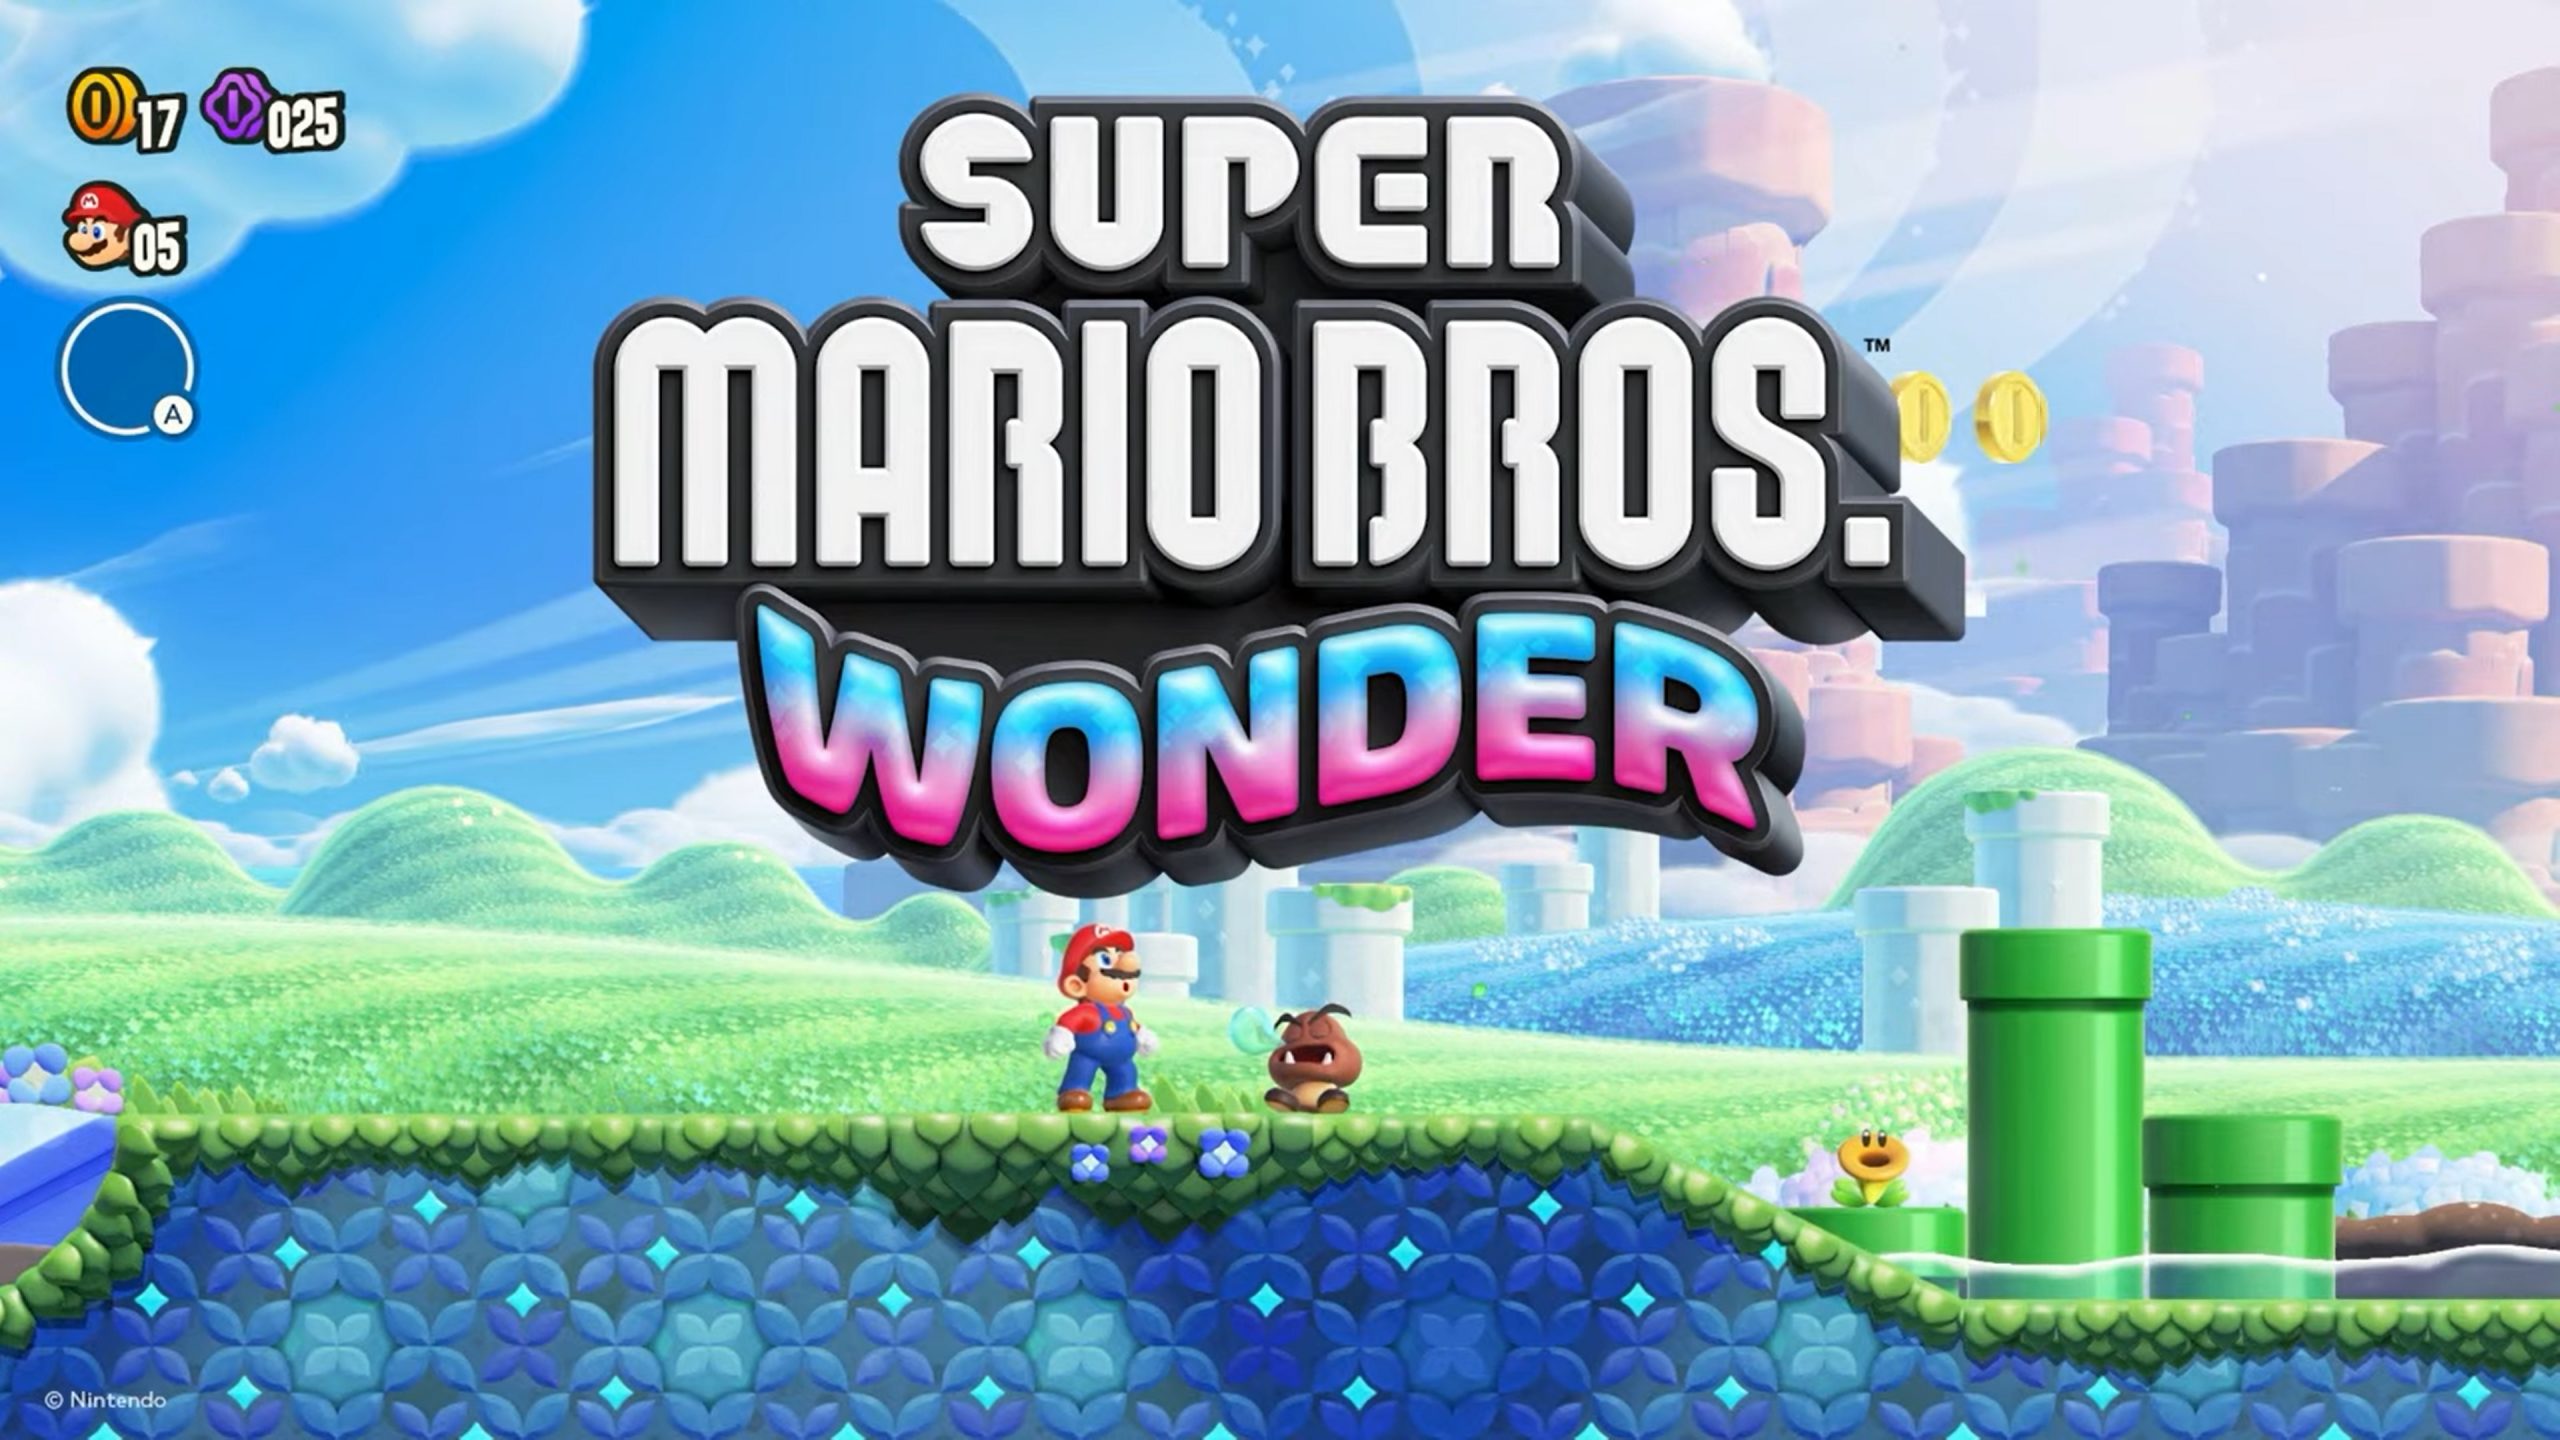 Antallet af solgte fysiske eksemplarer af Super Mario Bros. Wonder i Japan nåede op på over 638.000. Spillet indtog førstepladsen på hitlisterne